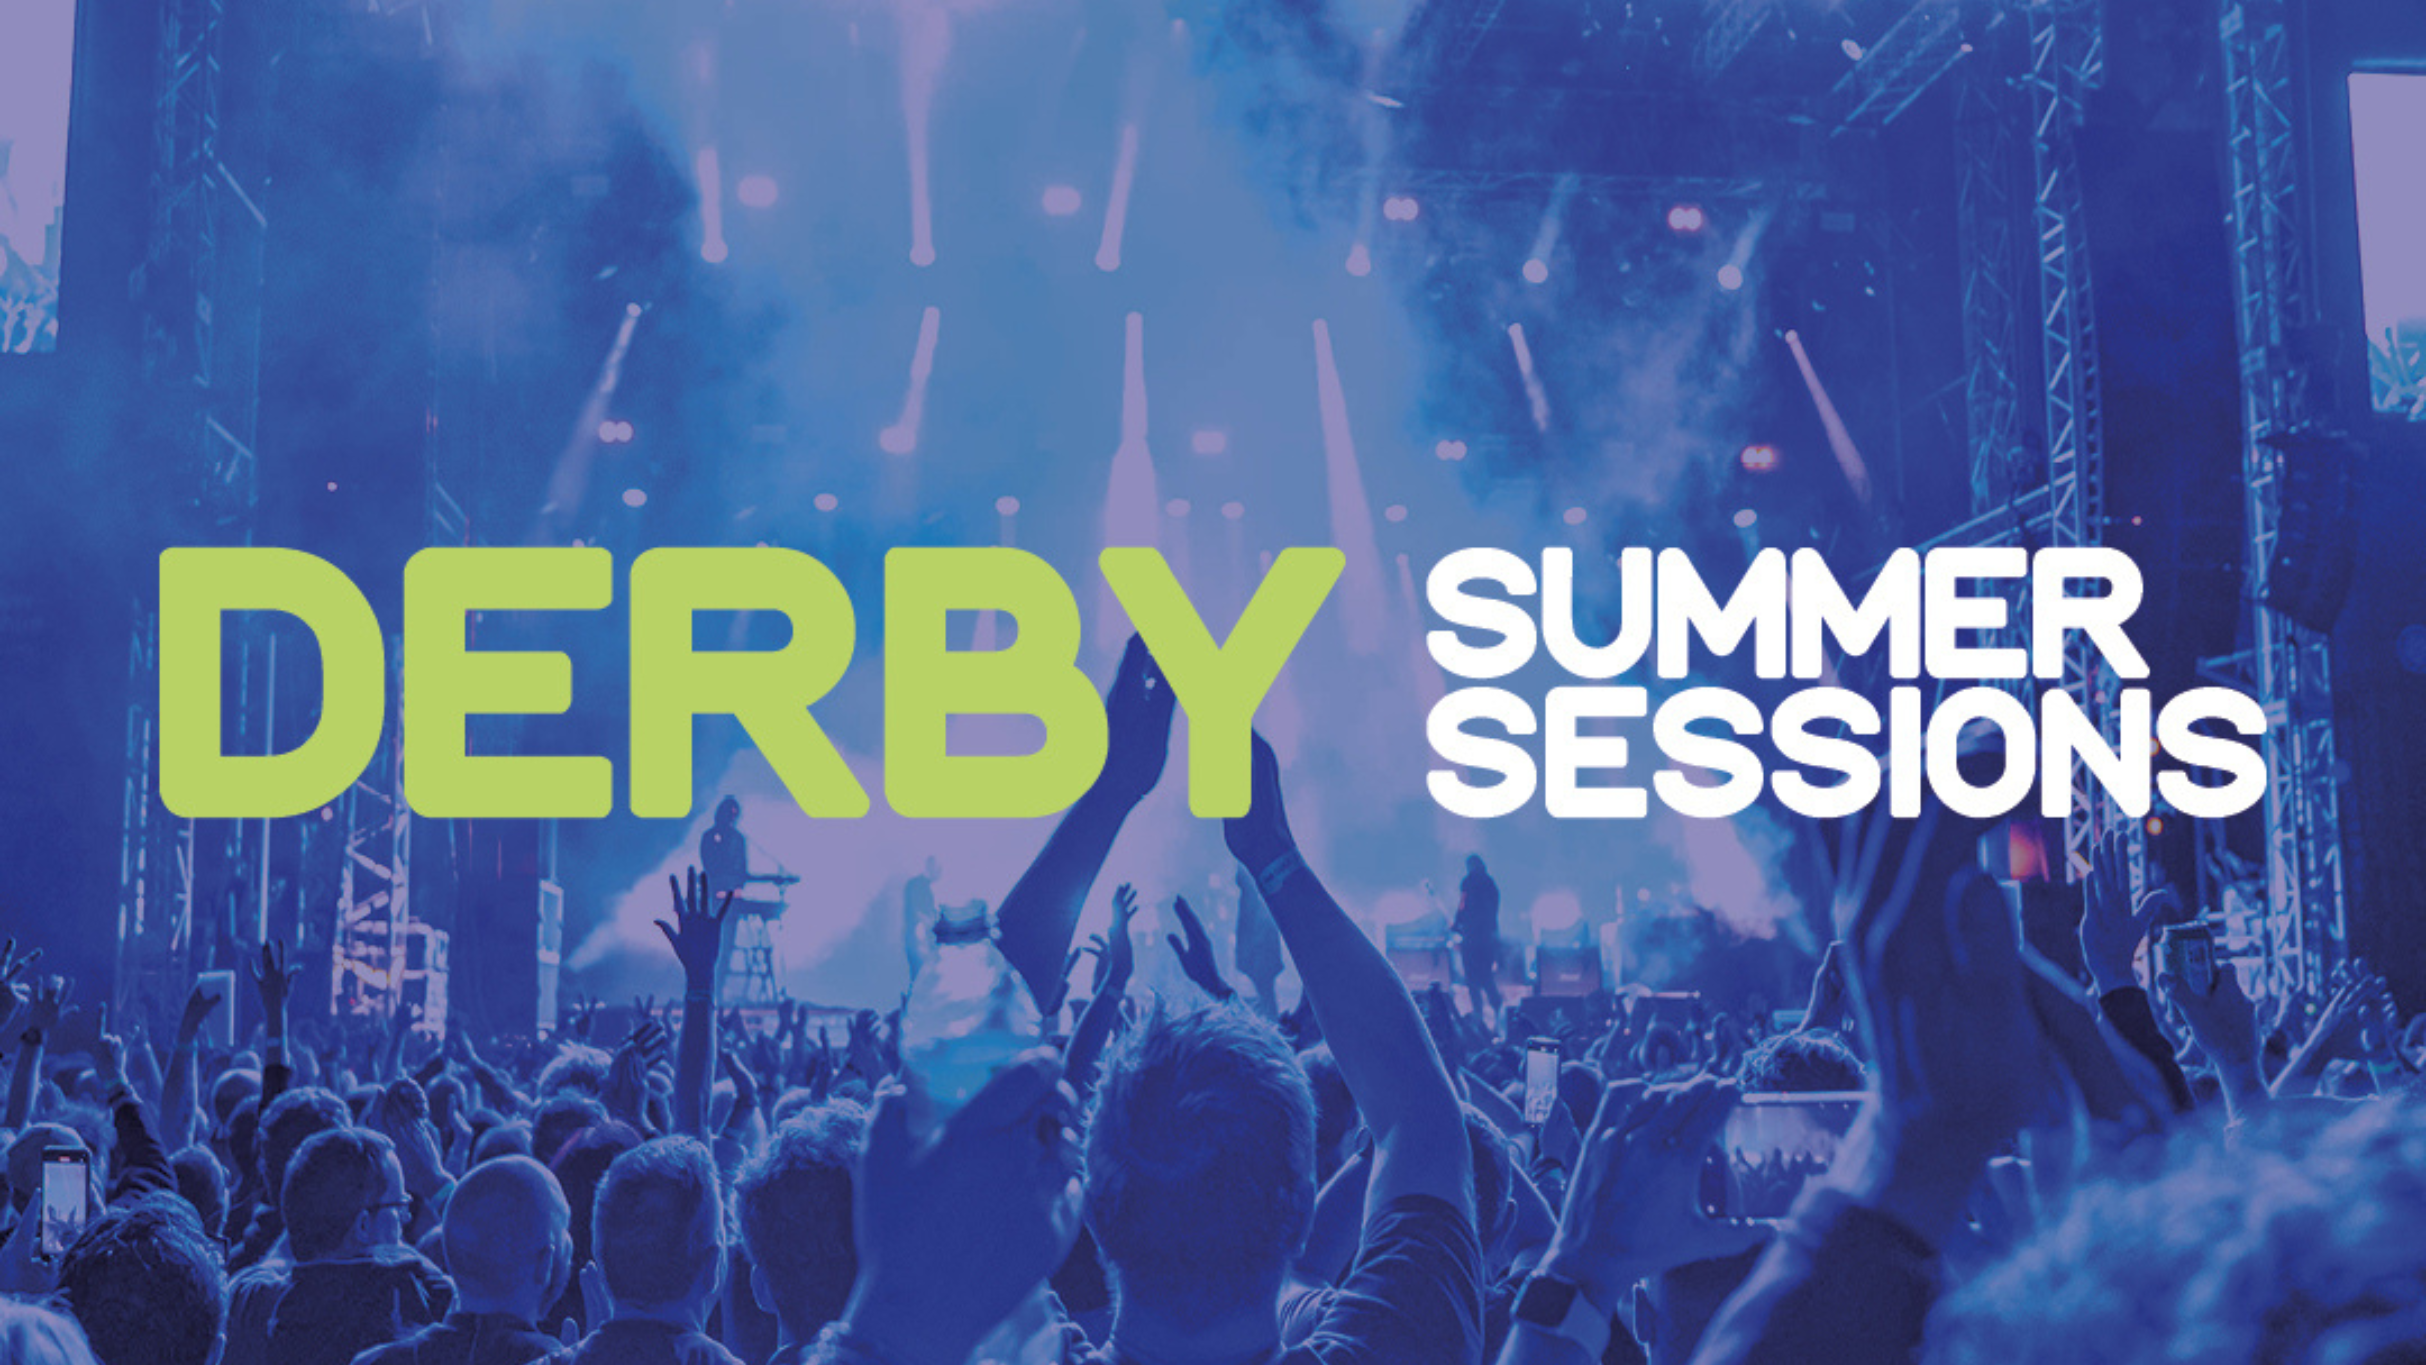 Derby Summer Sessions presale information on freepresalepasswords.com